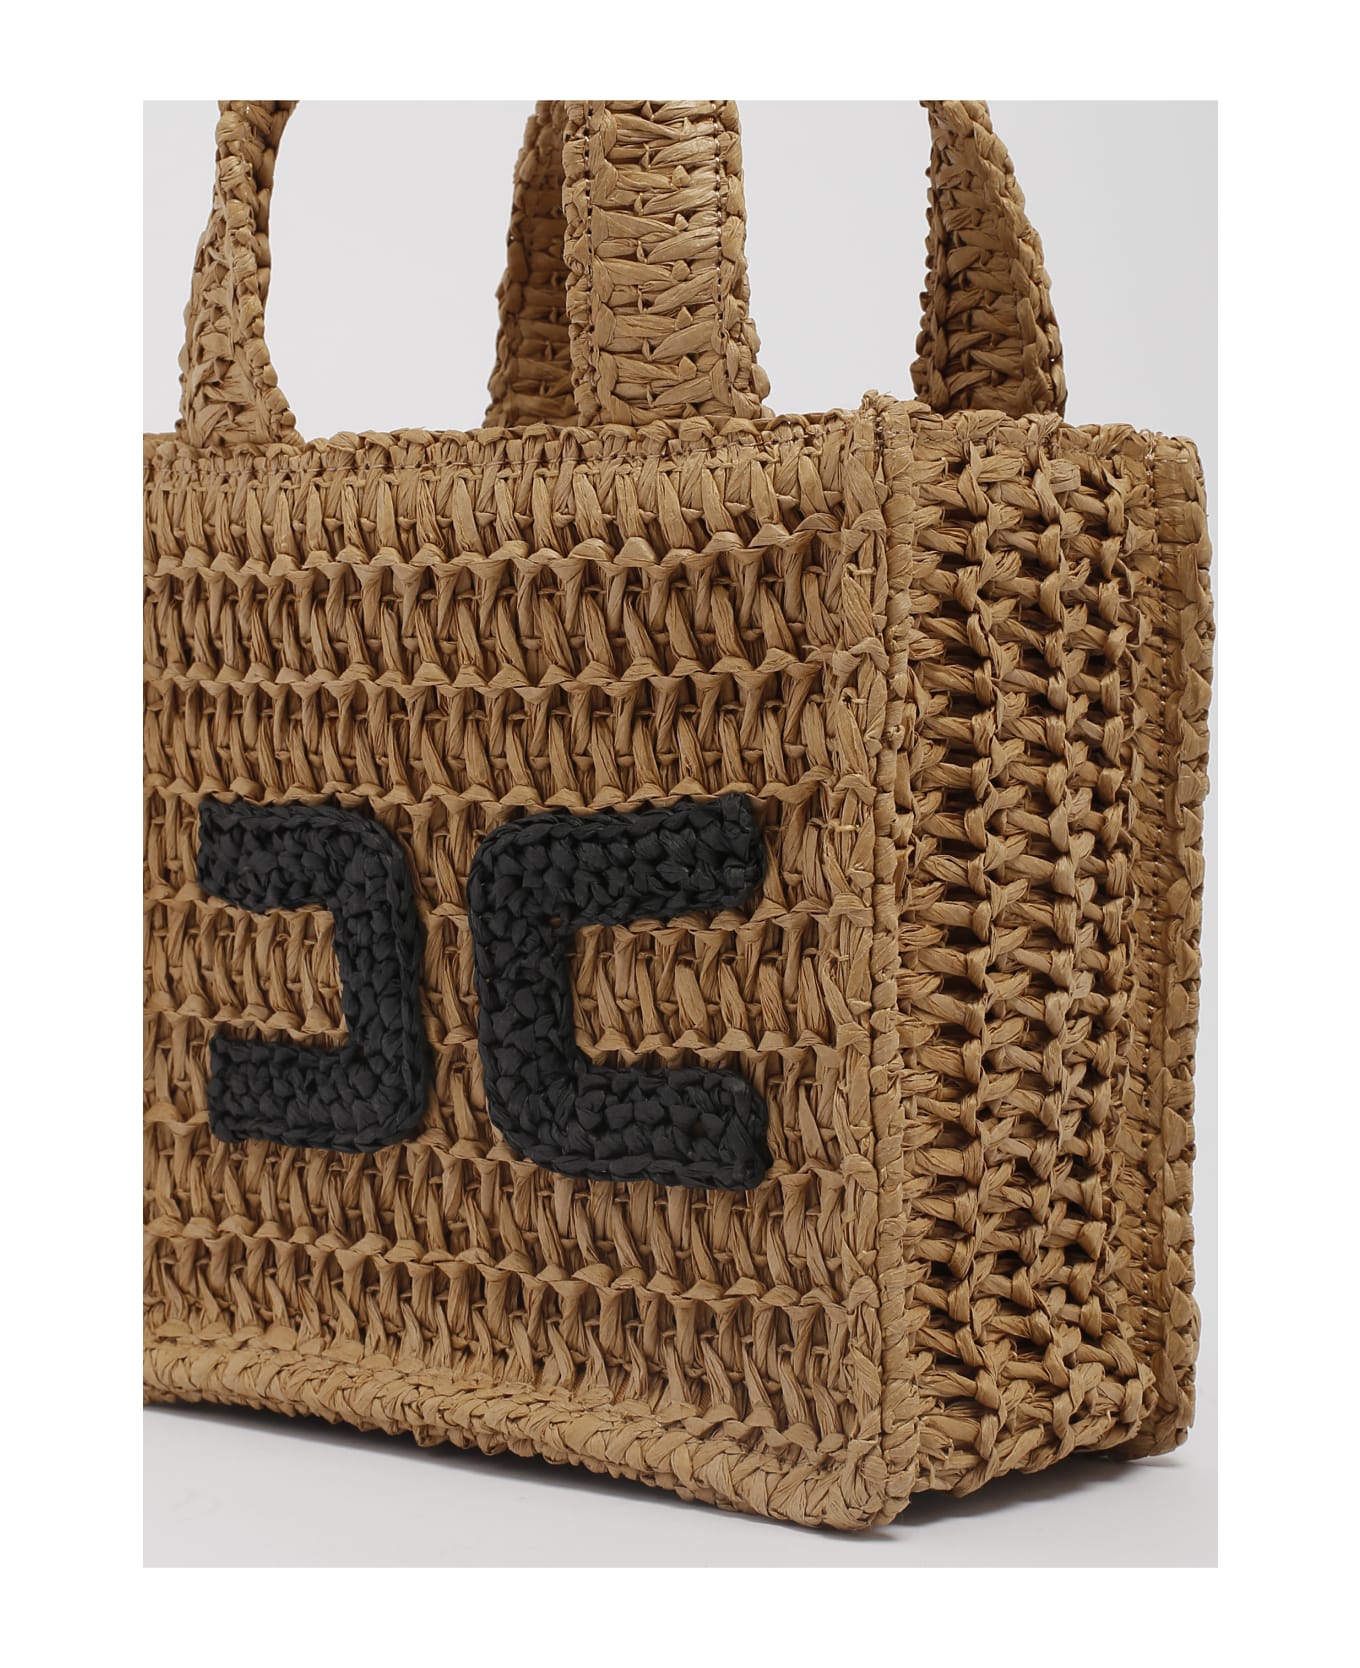 Elisabetta Franchi Handbag Shopping Bag - CORDA